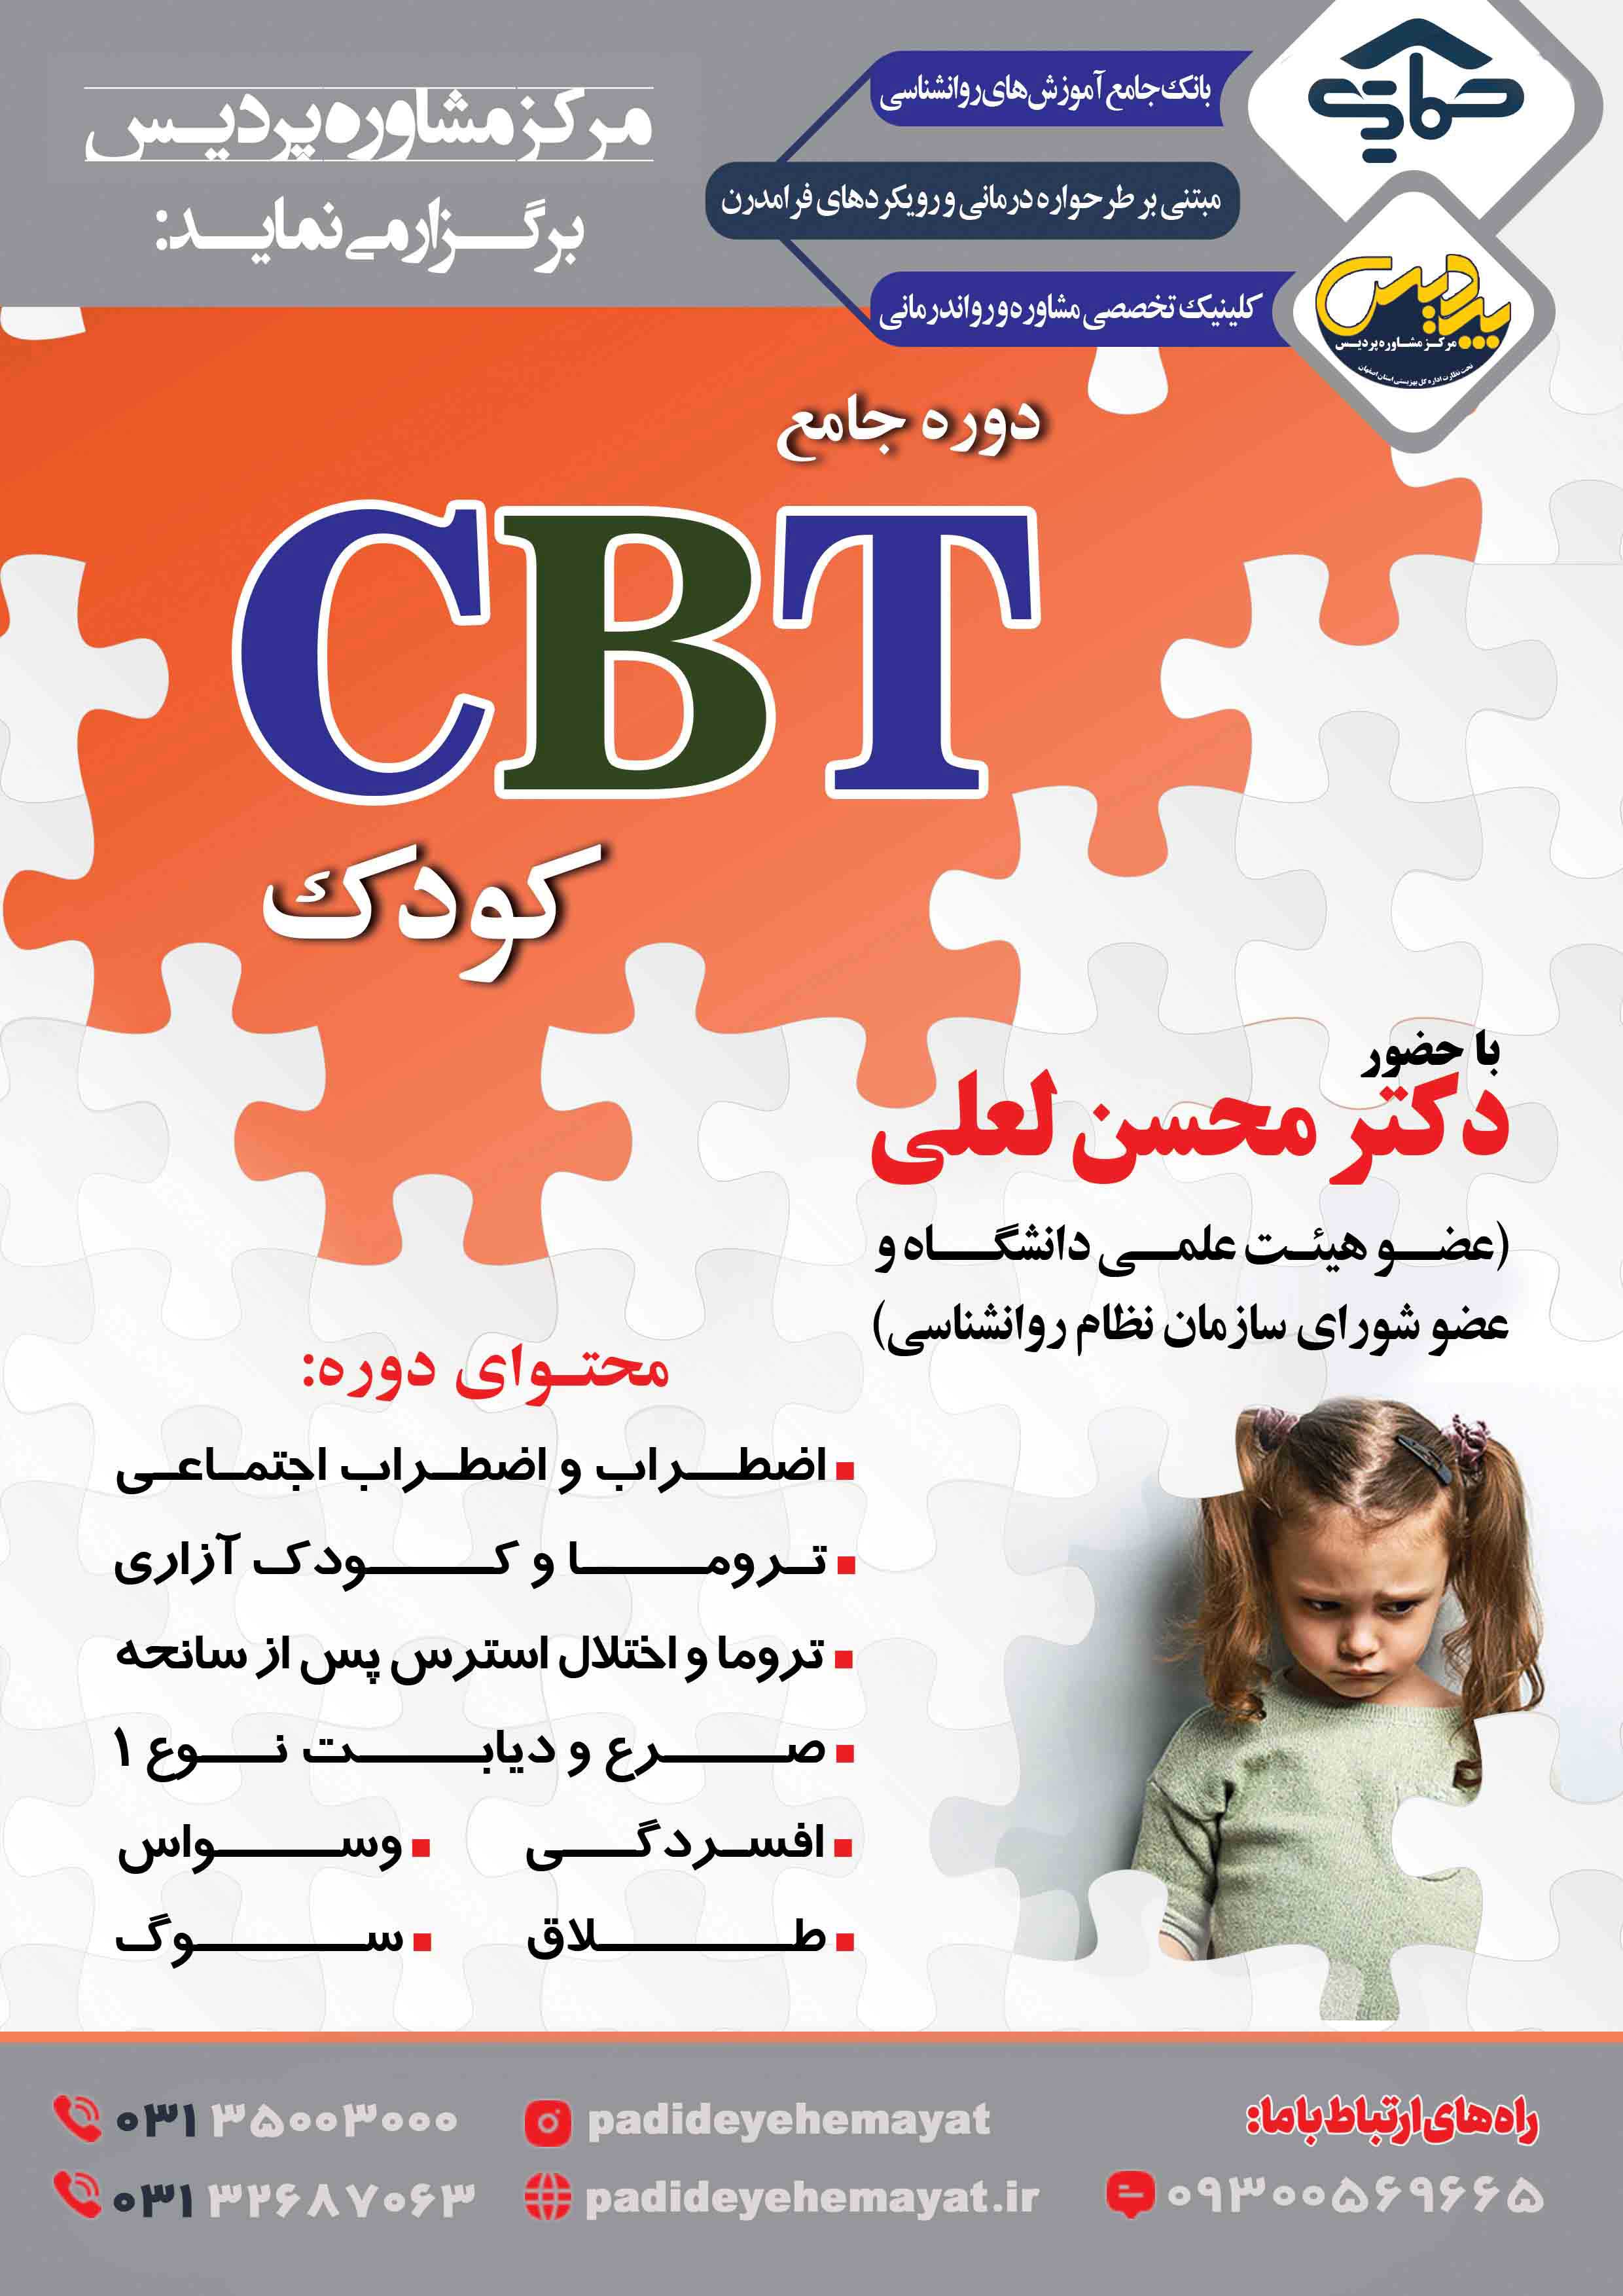 دوره جامع درمان شناختی رفتاری کودکان (CBT)